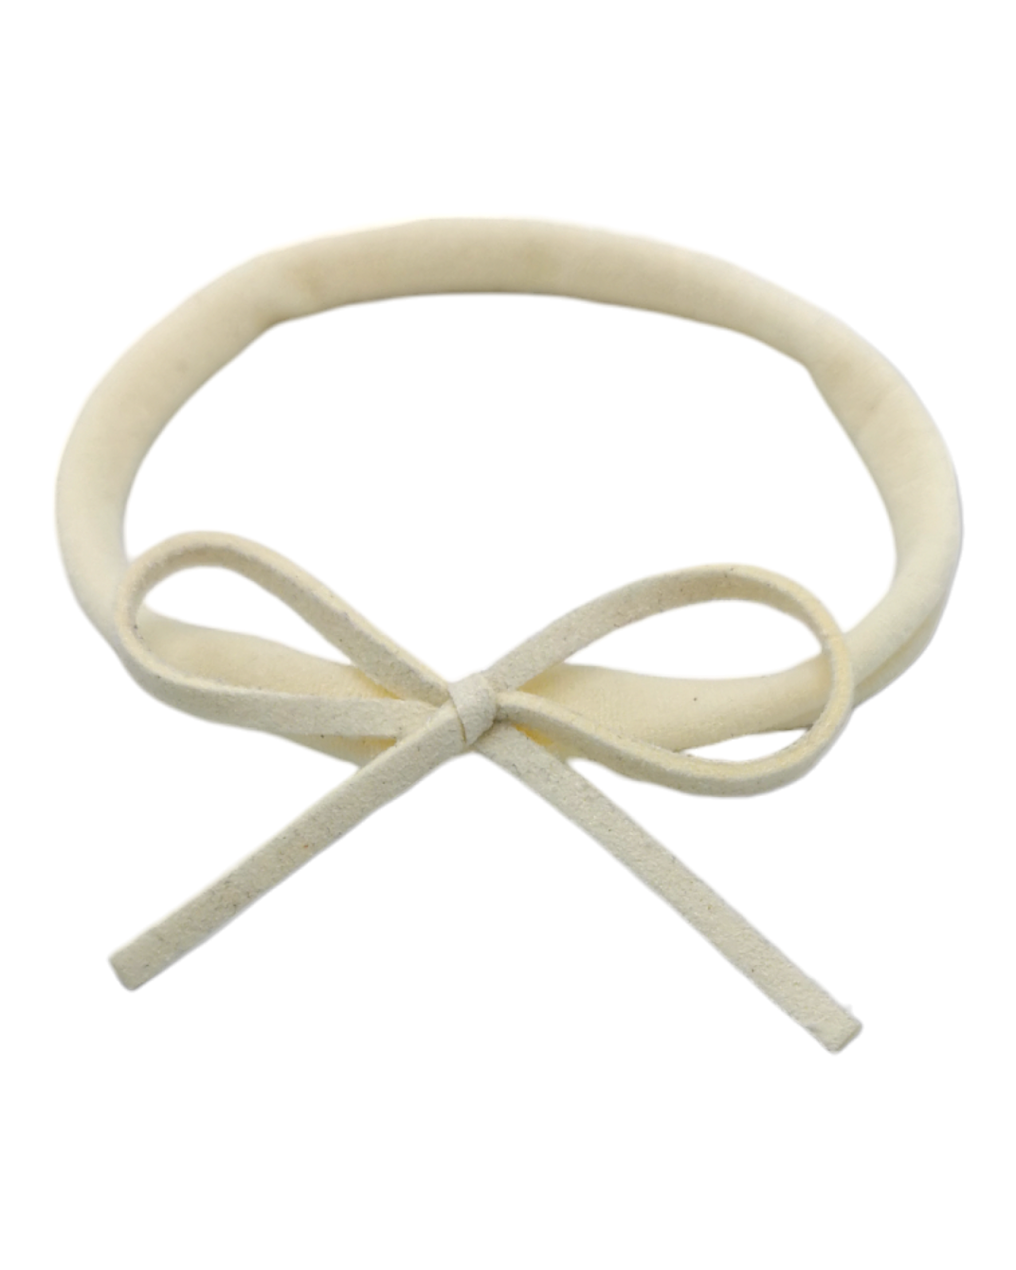 Cream Mini Cord Dainty Bow Headband - Betty Brown Boutique Ltd